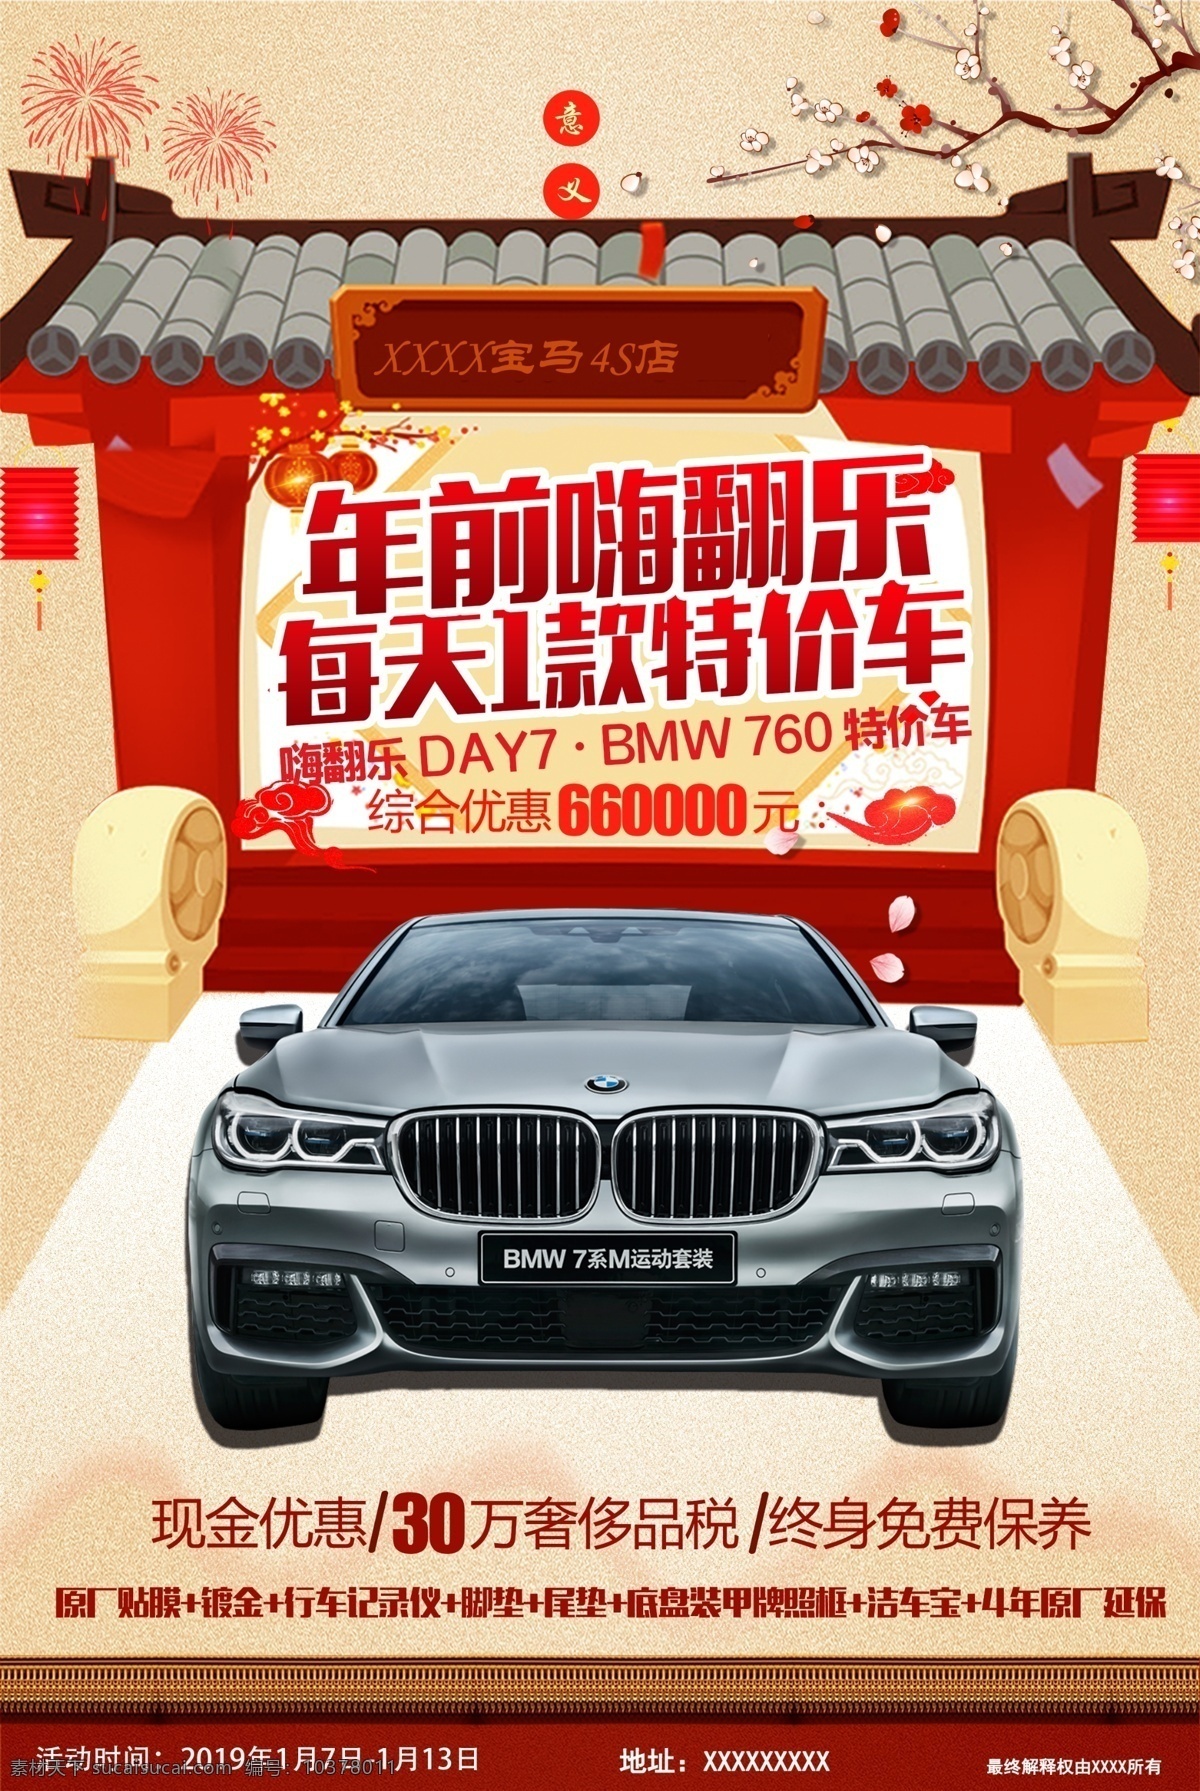 bmw 特价 车 宝马 春节 促销 海报 宝马汽车 年前促销 春节海报 朋友圈宣传图 分层